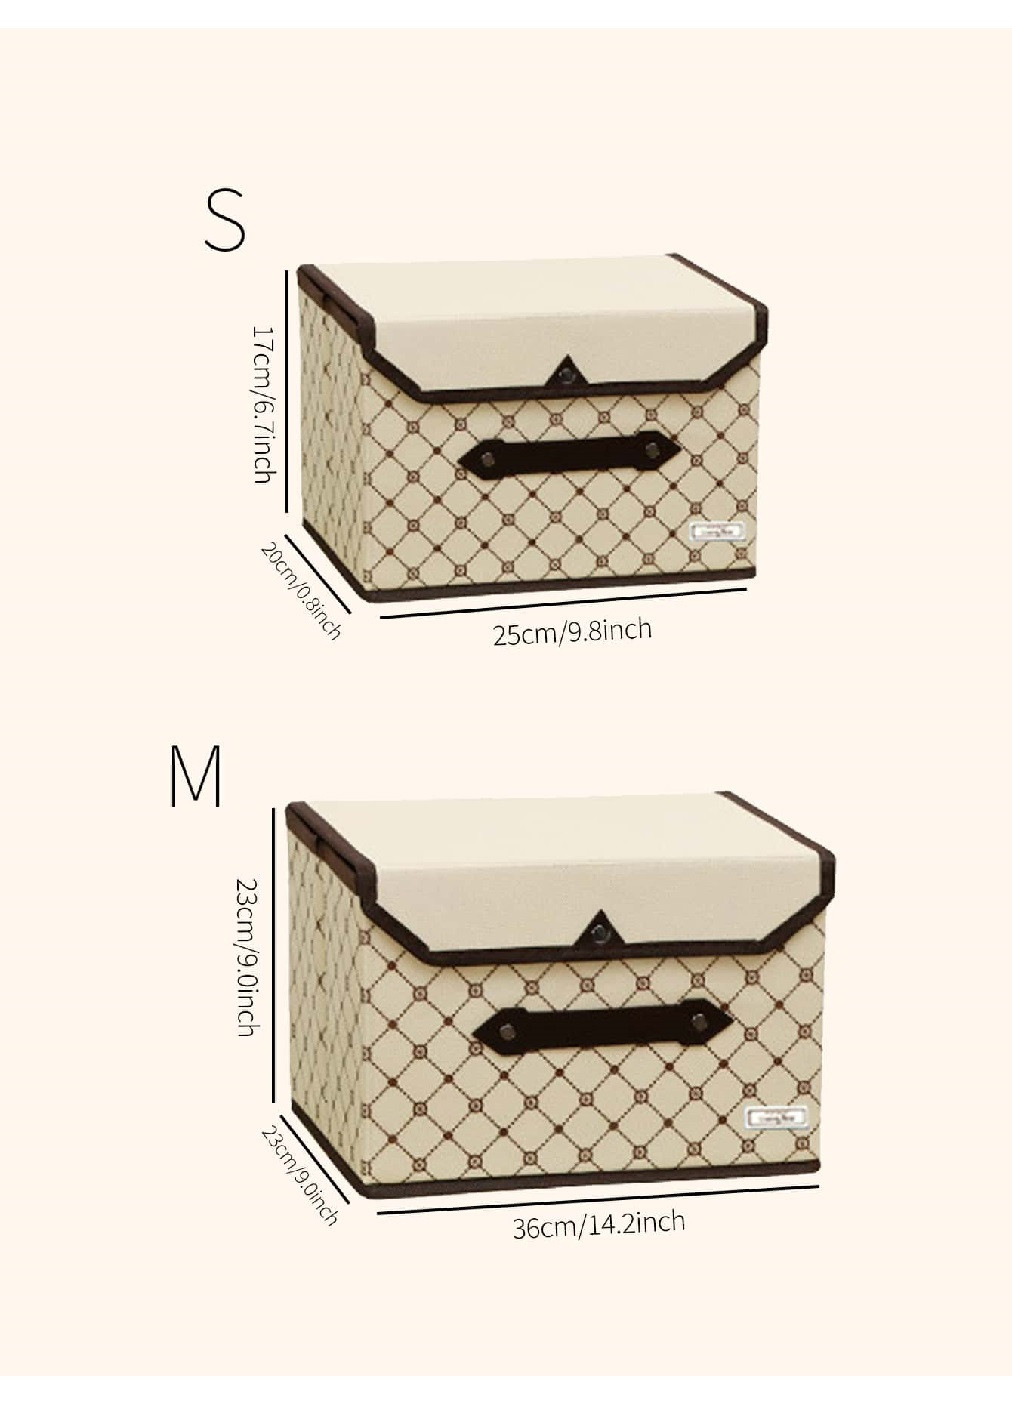 Комплект набор органайзеров кейсов боксов для хранения одежды личных вещей сумок 2 шт (475057-Prob) Бежевый квадрат Unbranded (261030916)